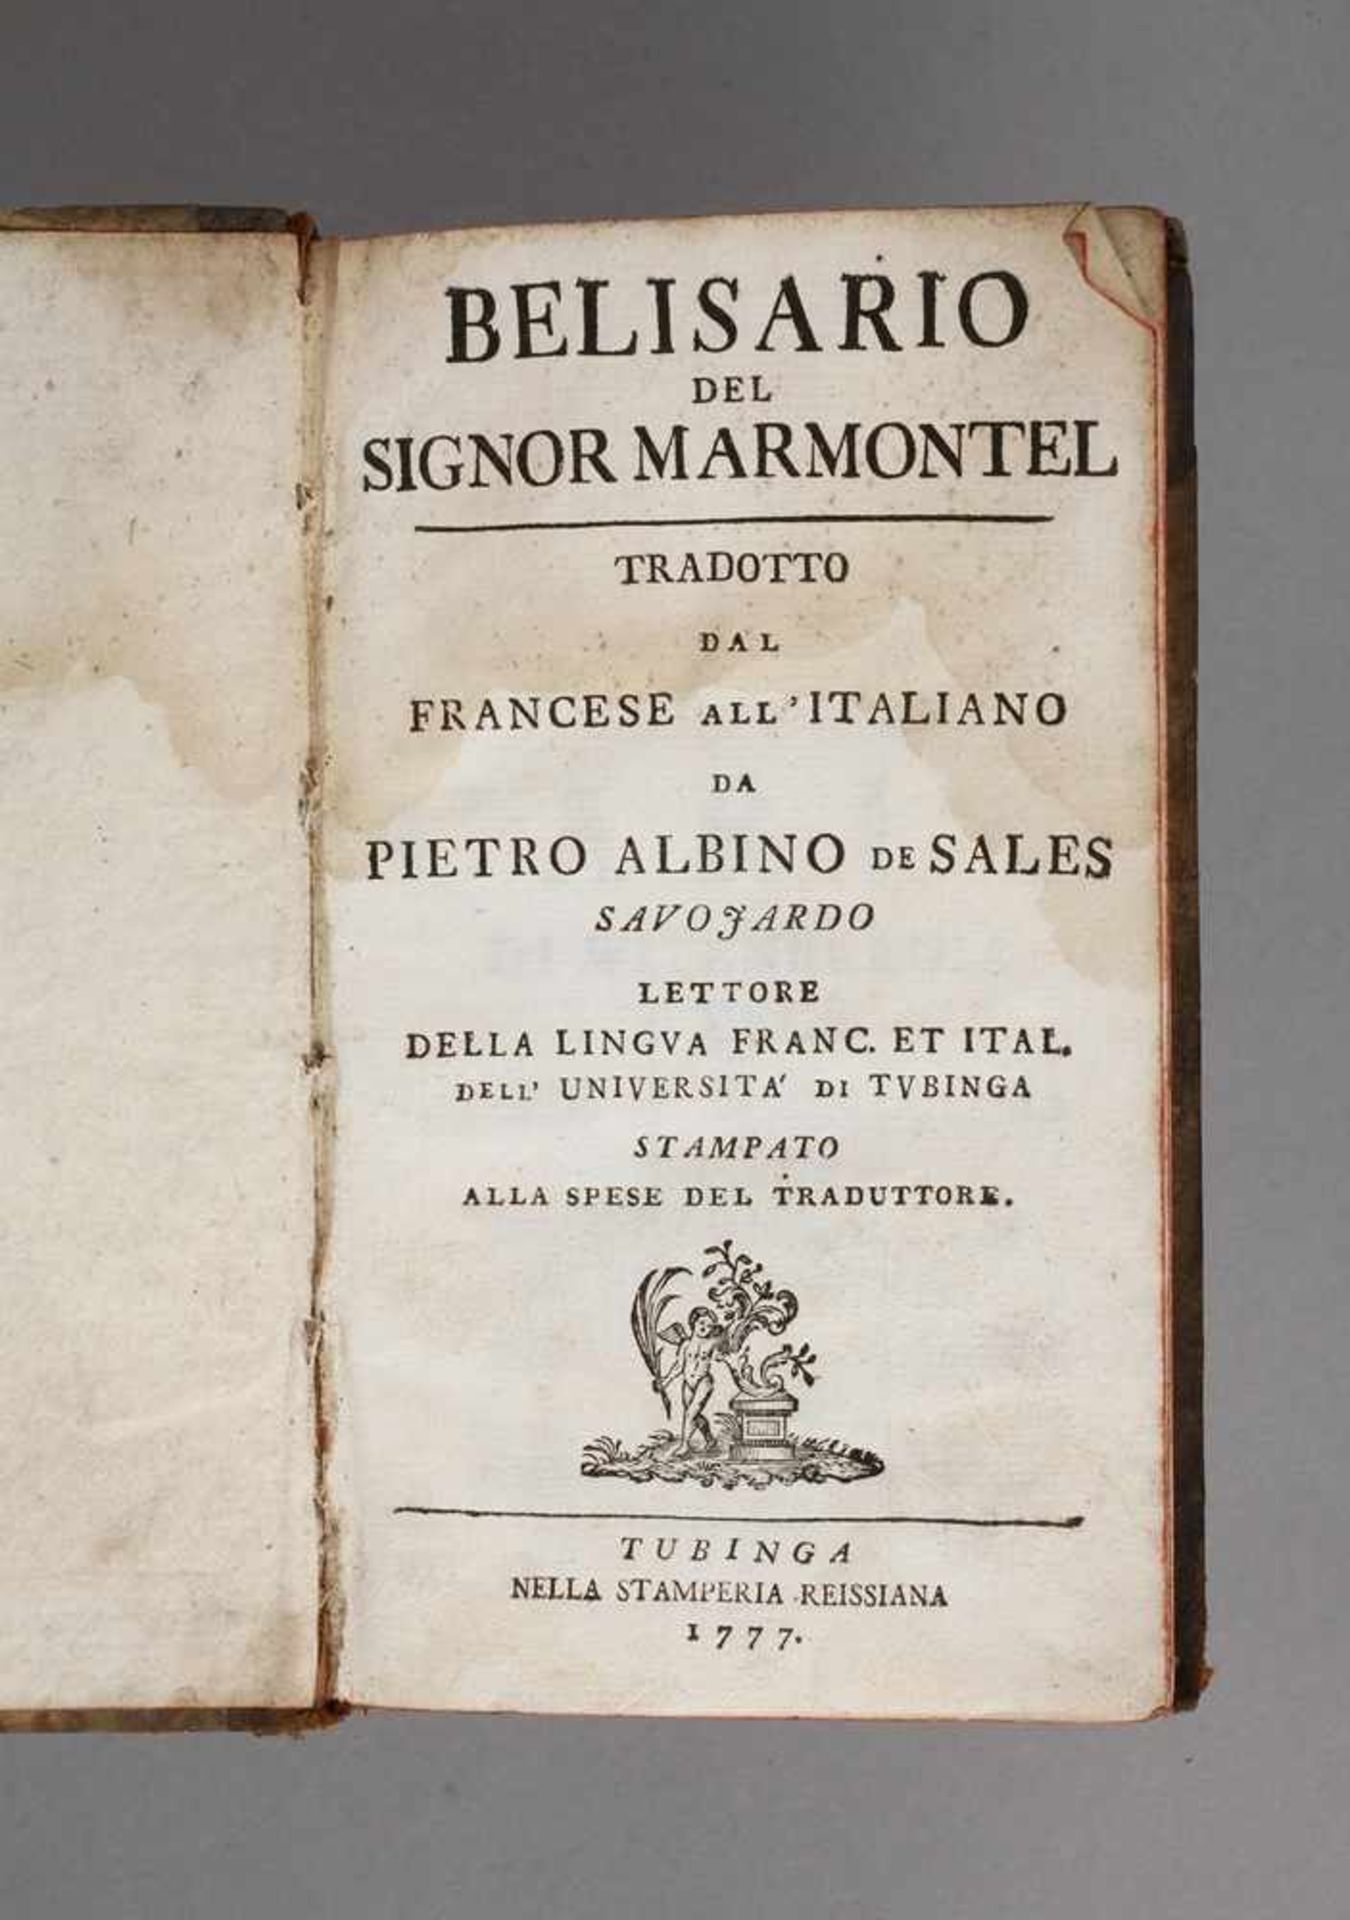 Belisario del Signor MarmontelTradotto dal Francese all'Italiano da Pietro Albino de Sales